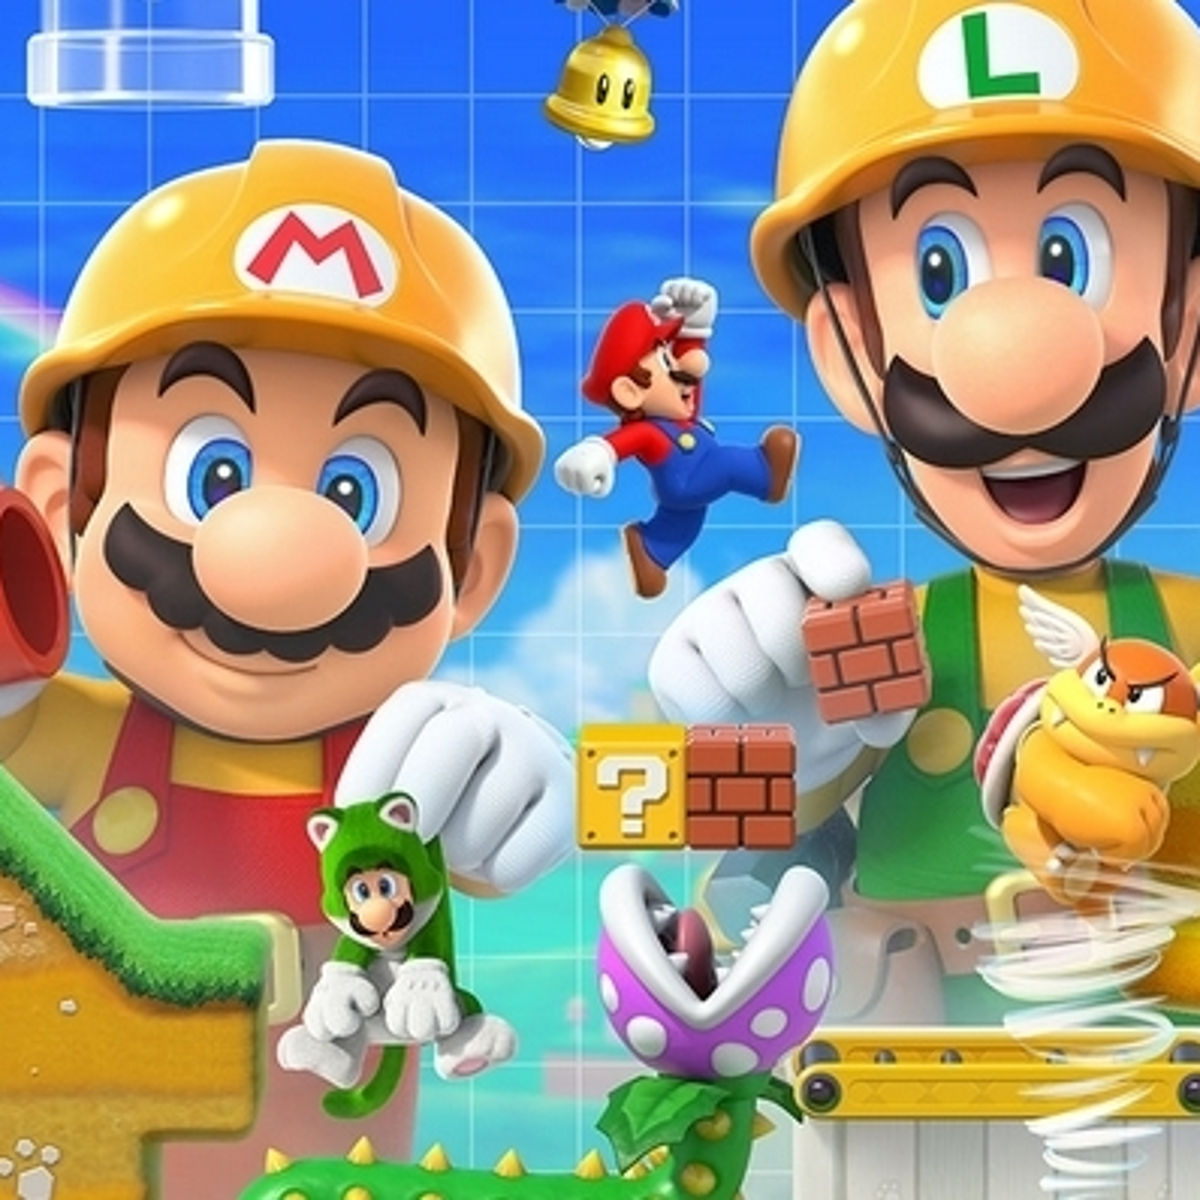 Super Mario Maker 2 tendrá modo historia y cooperativo | Eurogamer.es